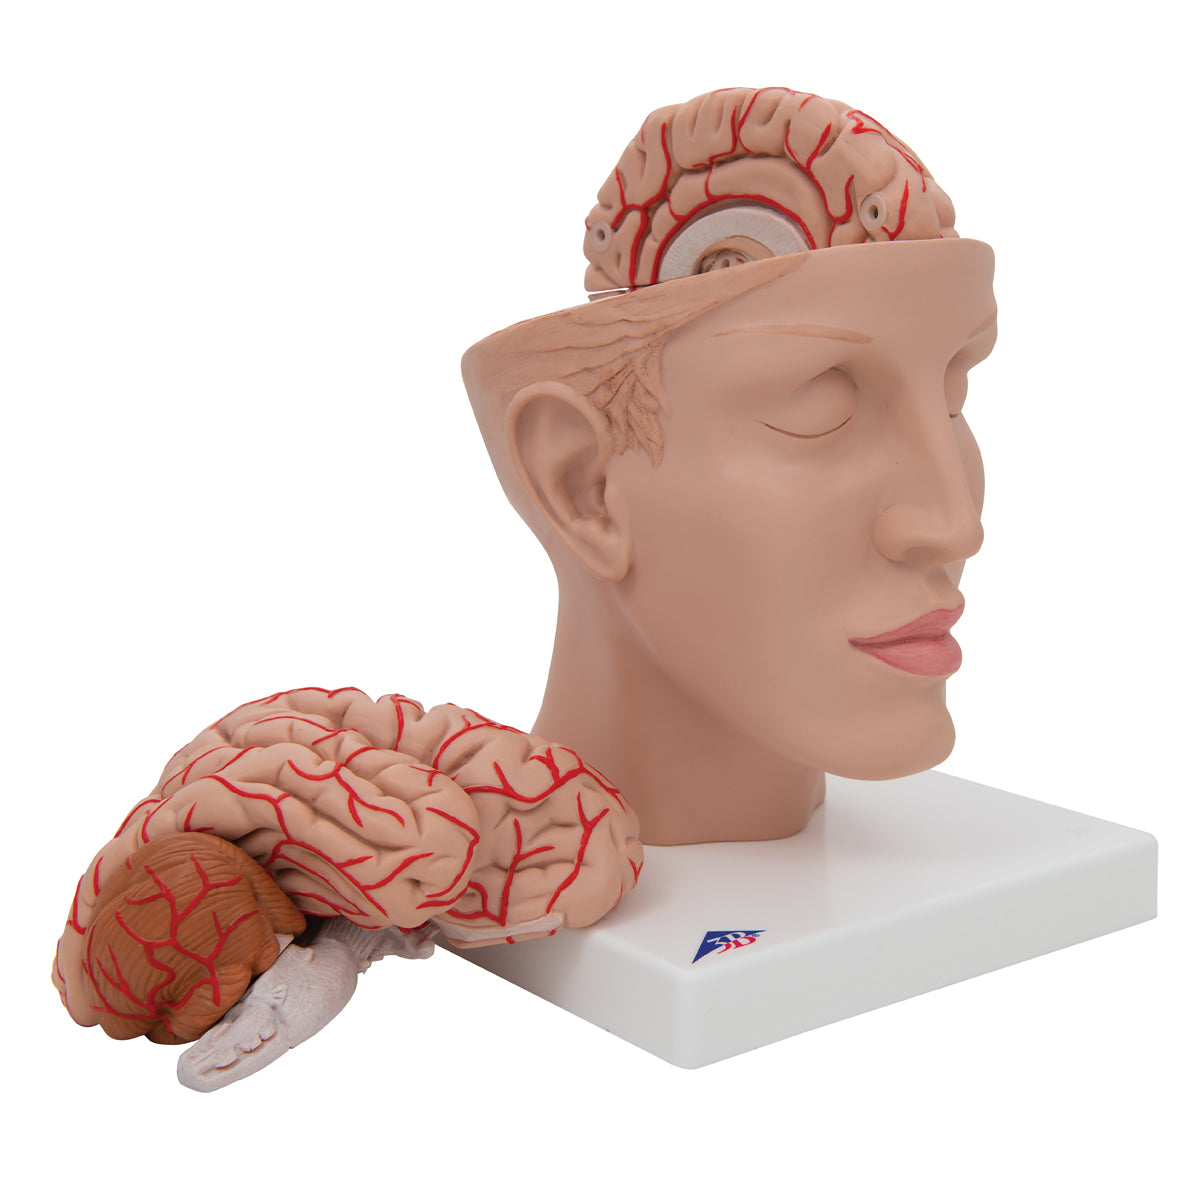 Hjernemodel der viser arterier, vener og den indre kraniebund. Hjernen kan tages ud og deles i 8